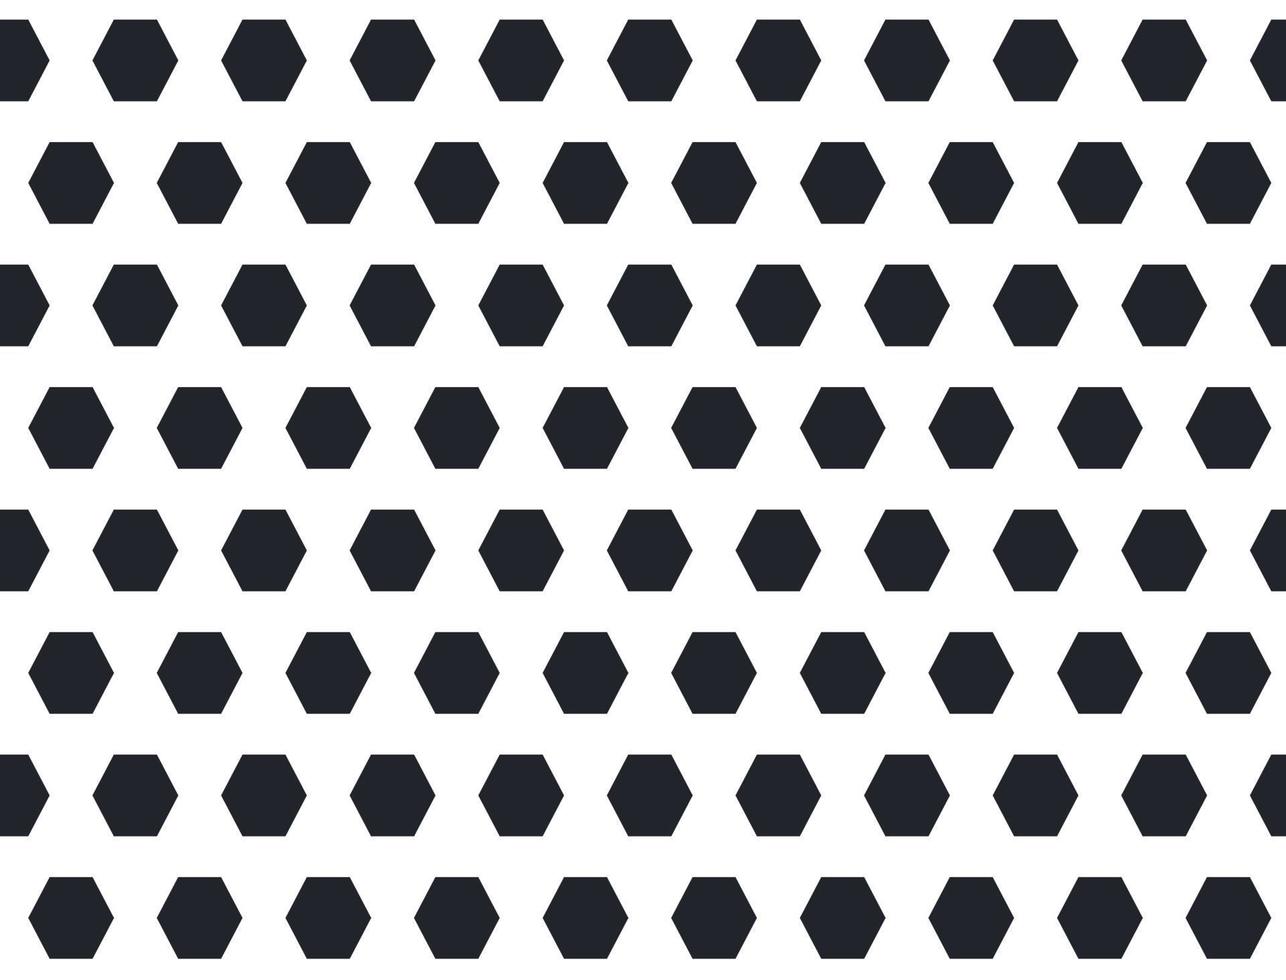 voetbal en voetbal naadloos patroon. sport bal textuur. voetbal achtergrond. zwart-wit patroon met voetbal geometrische zeshoeken. vectorillustratie op witte achtergrond vector